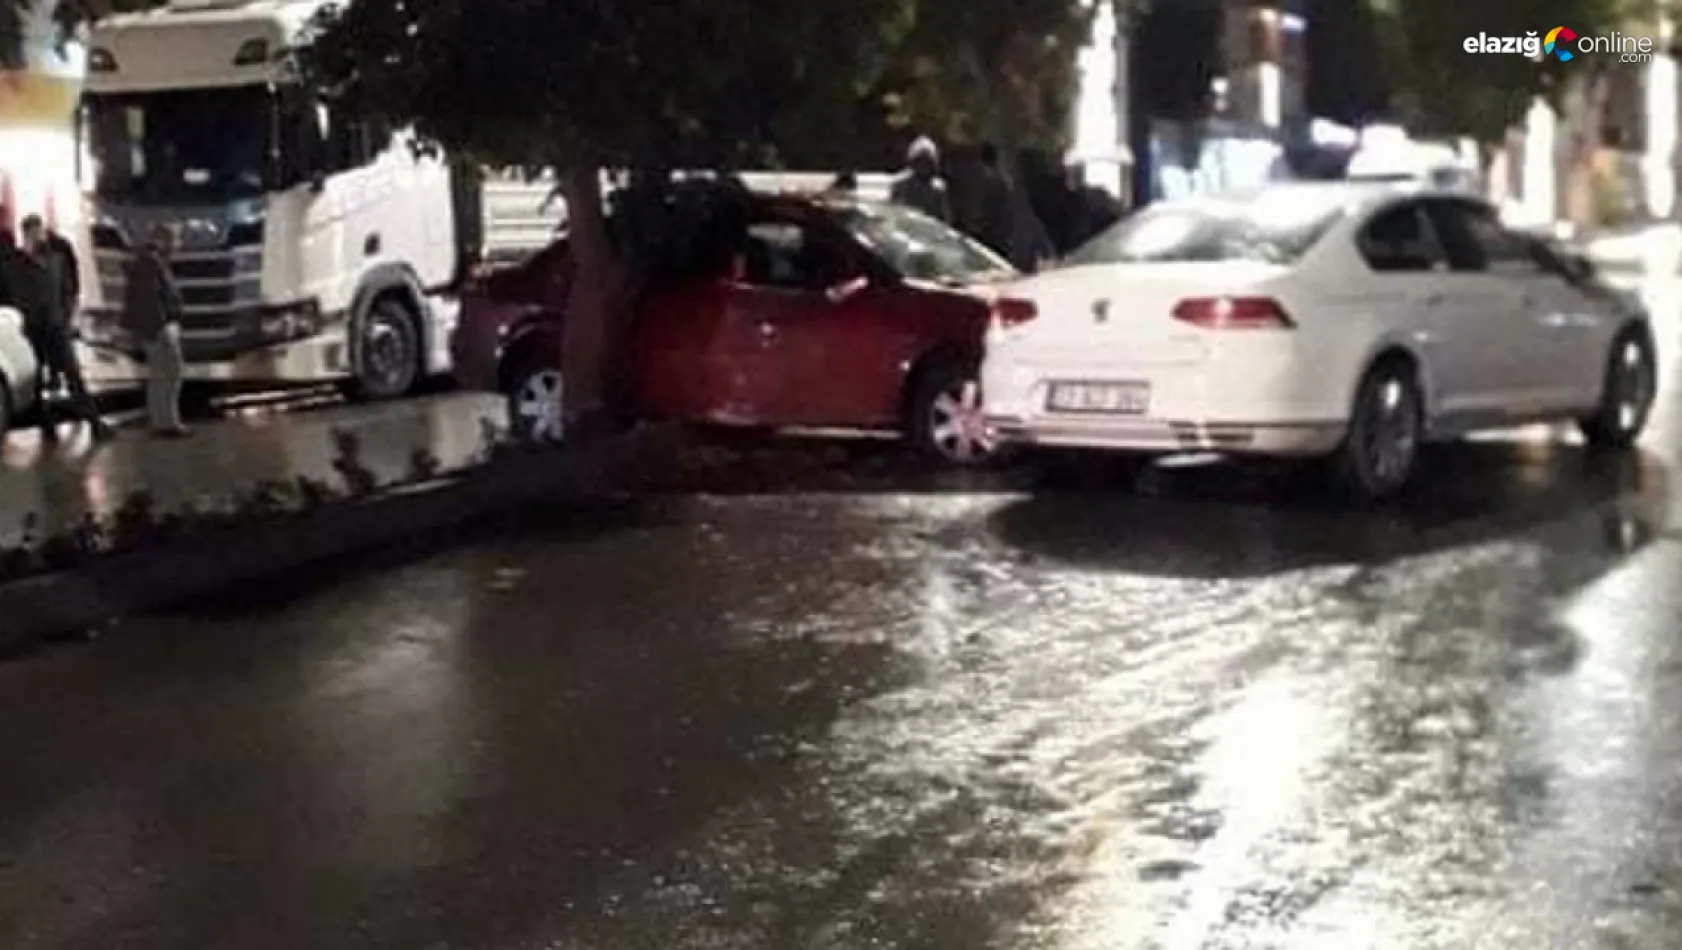 Elazığ'da trafik kazası! Önce refüjdeki ağaca sonra karşı şeritteki otomobile çarptı